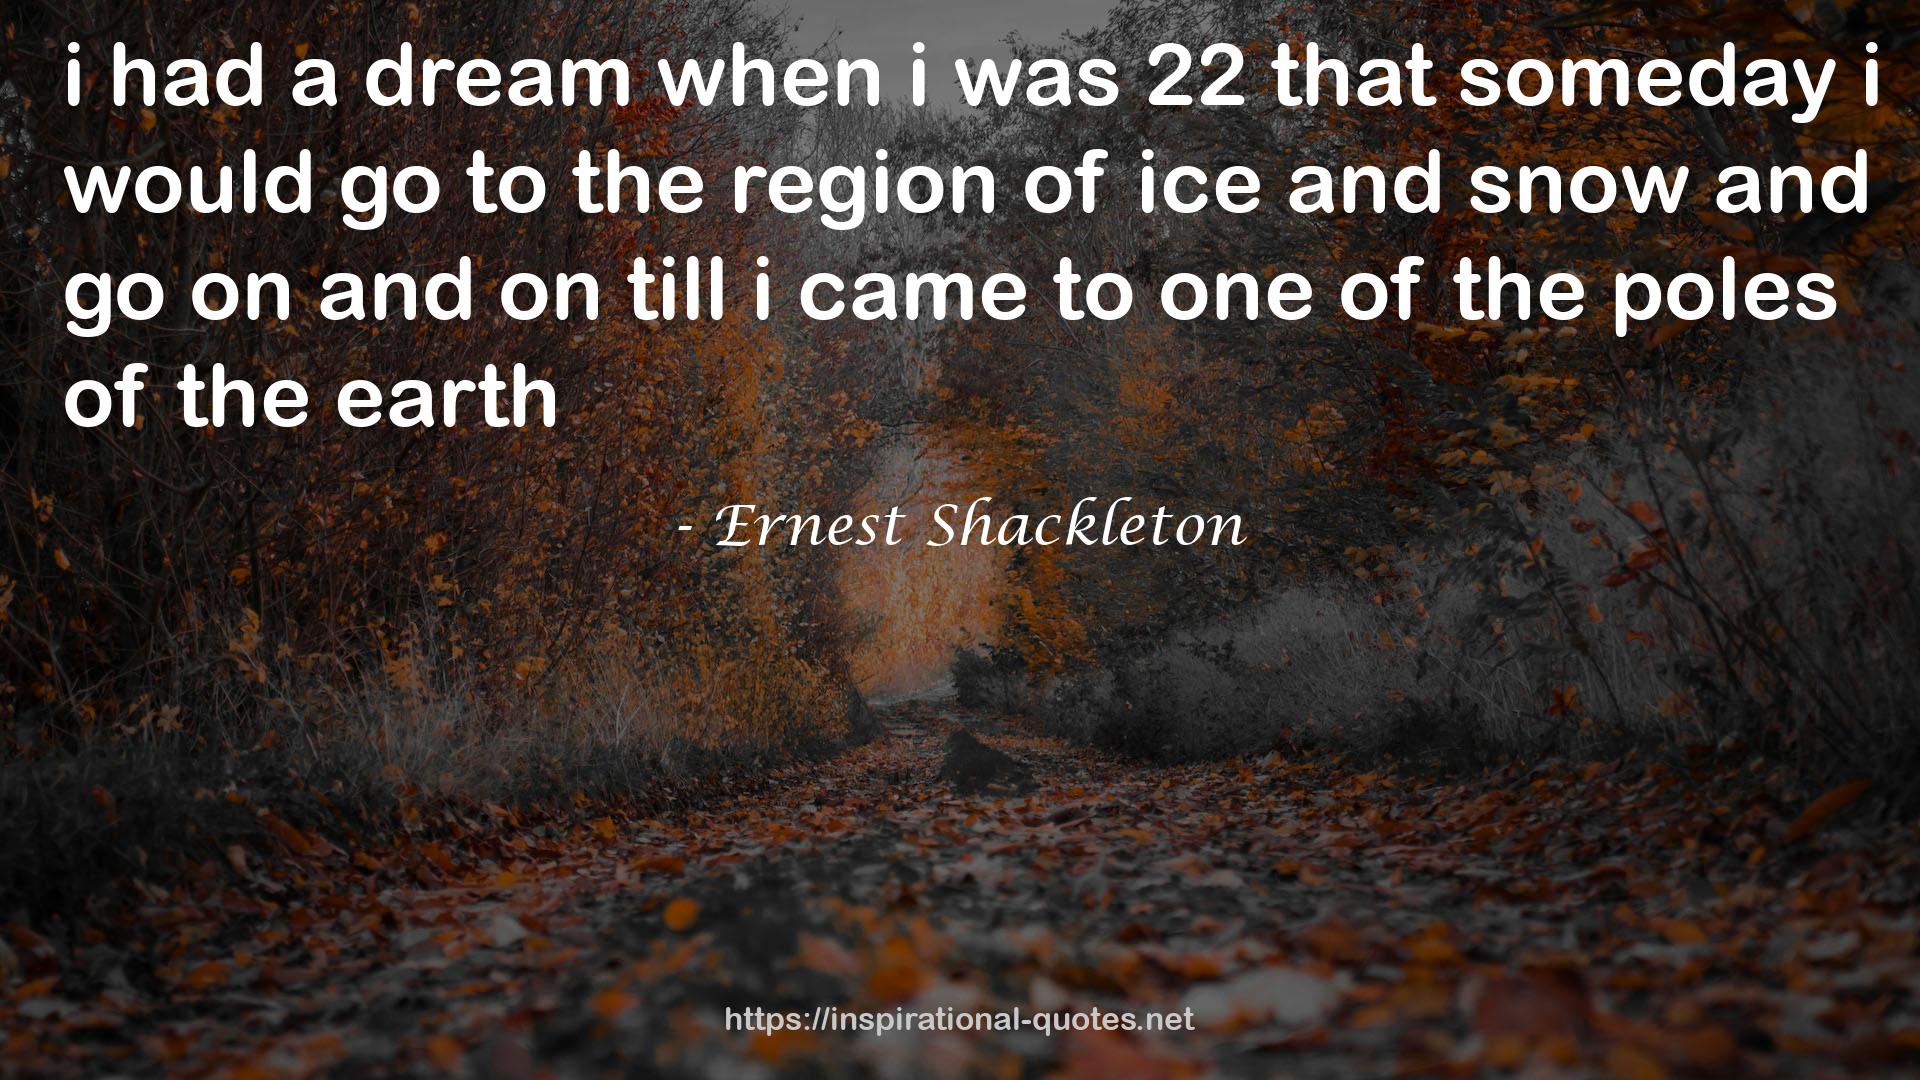 Ernest Shackleton QUOTES